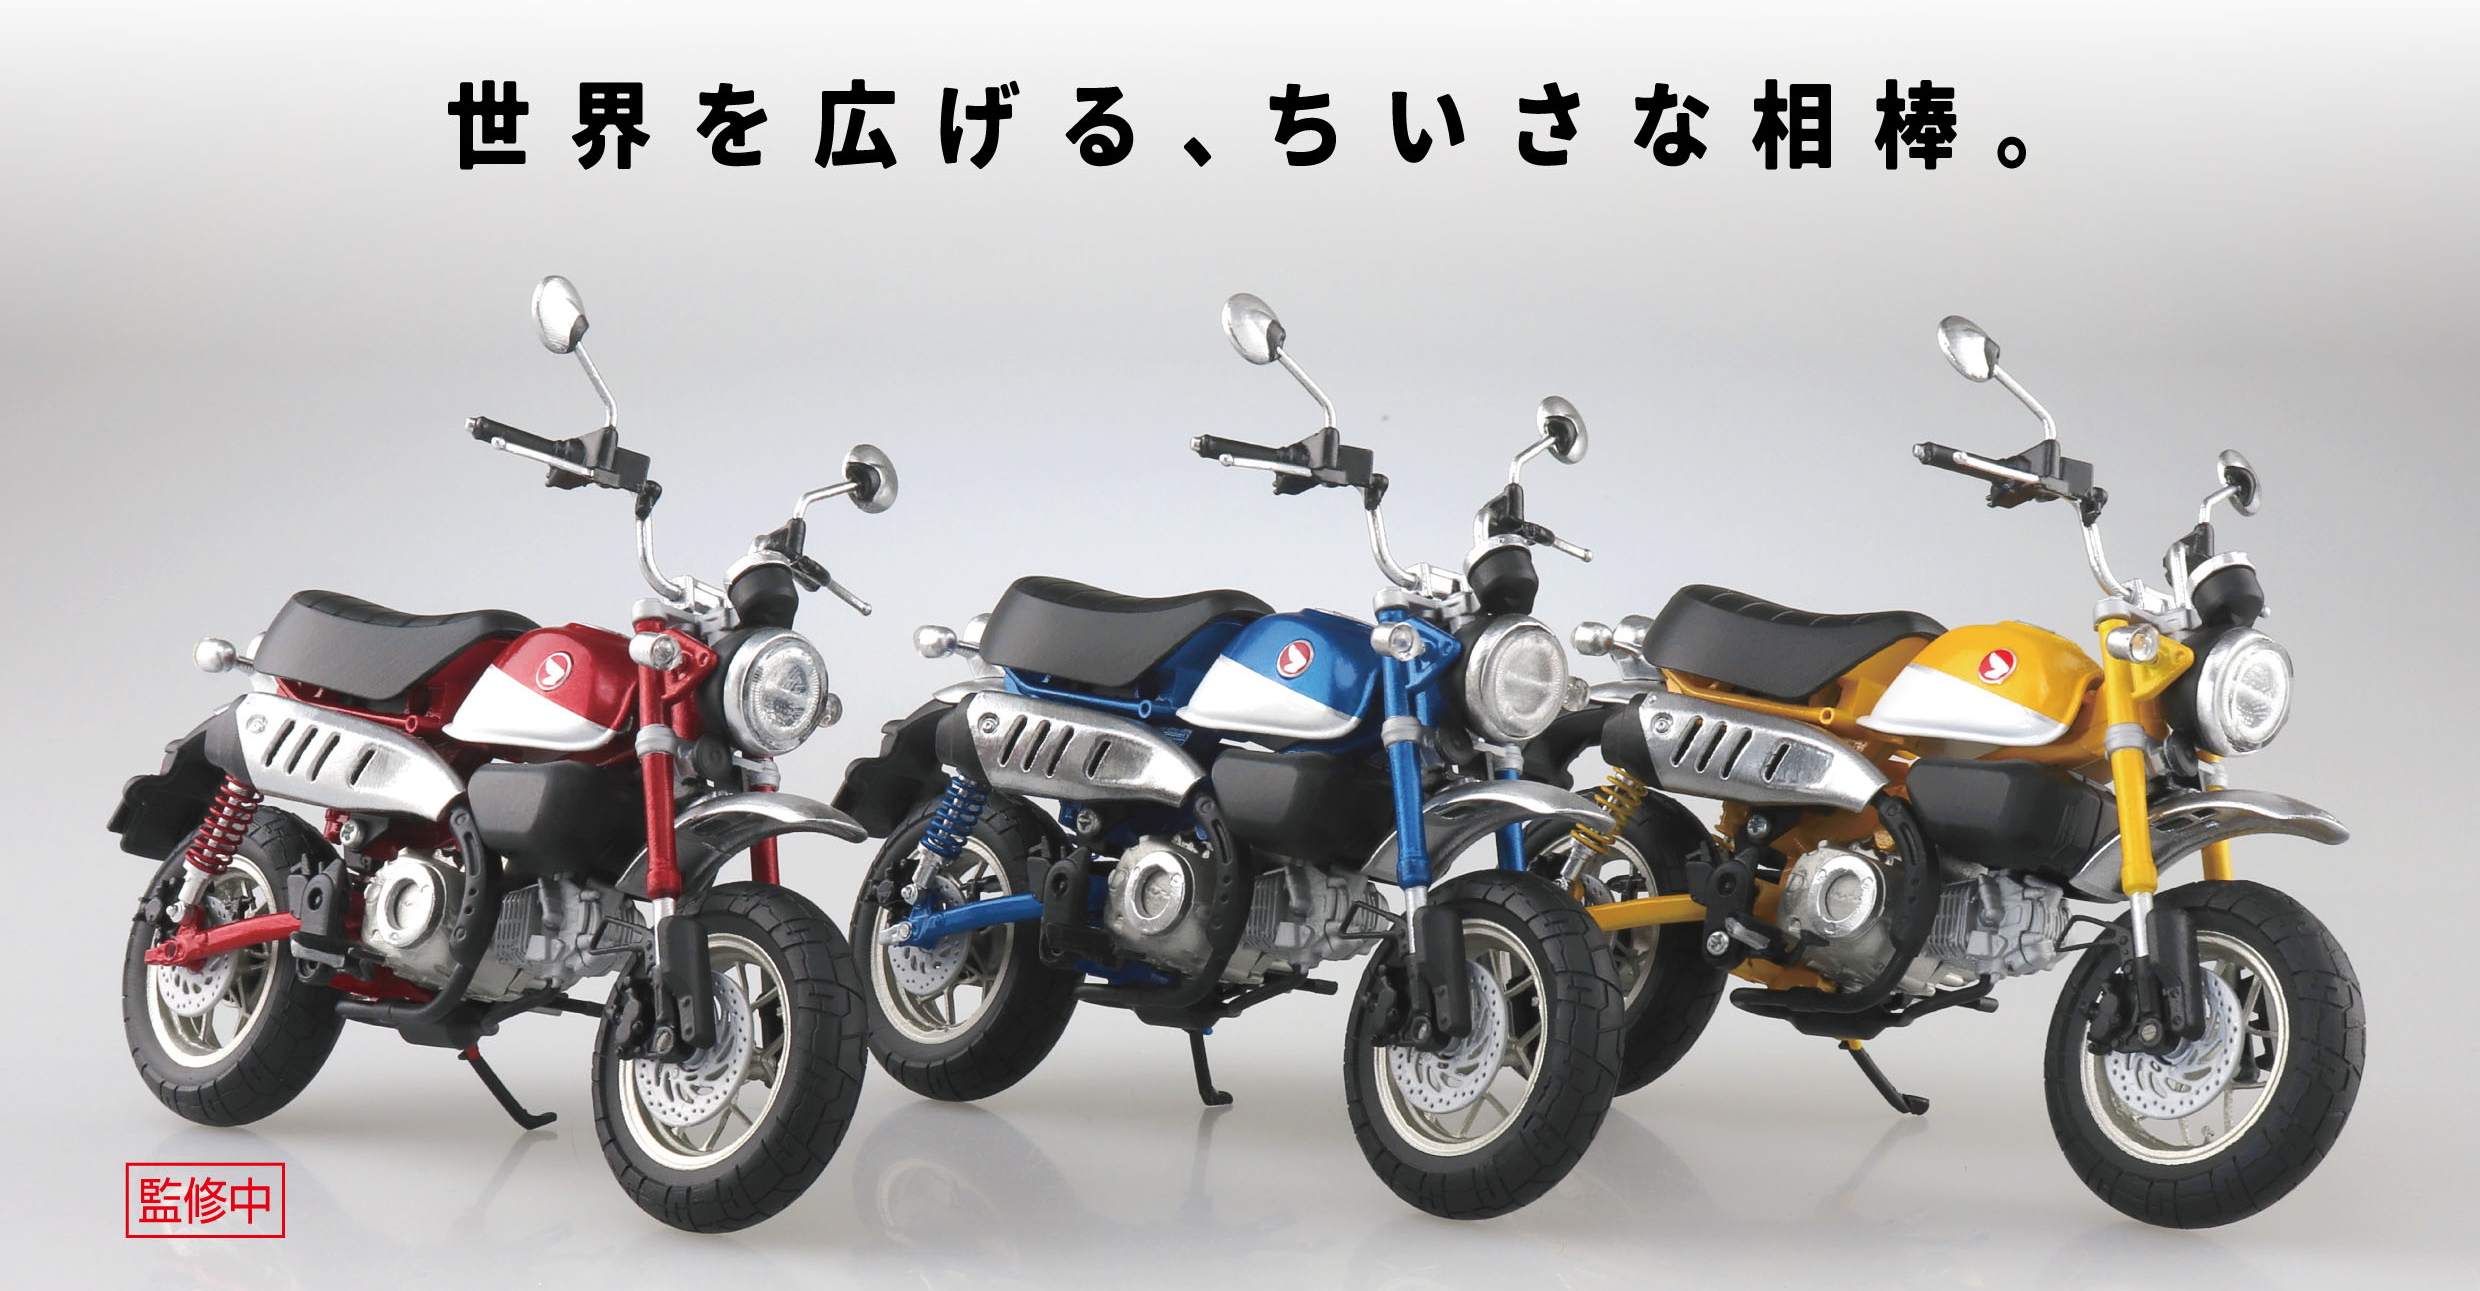 世界を広げる ちいさな相棒 Honda Monkey125 がアオシマ 完成品バイクシリーズに登場 Hobby Watch